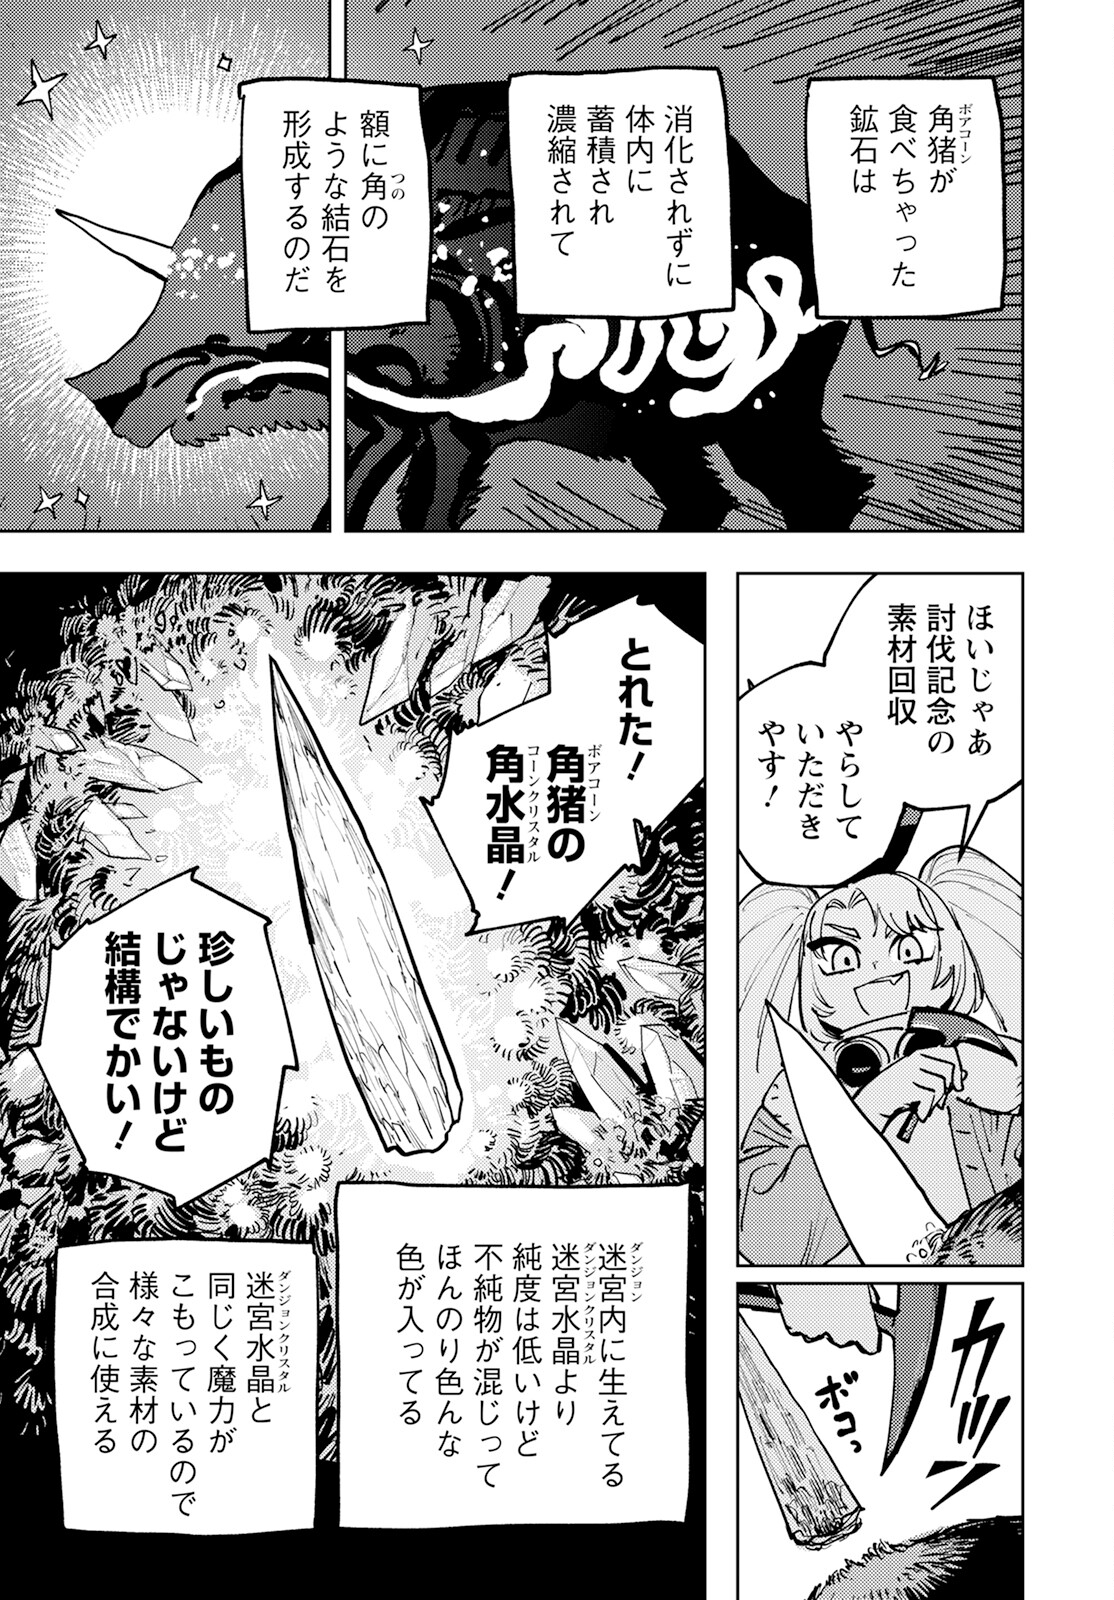 Bouken ni wa, Buki ga Hitsuyou da! – Kodawari Rudy no Kajiya Gurashi - Chapter 3 - Page 25